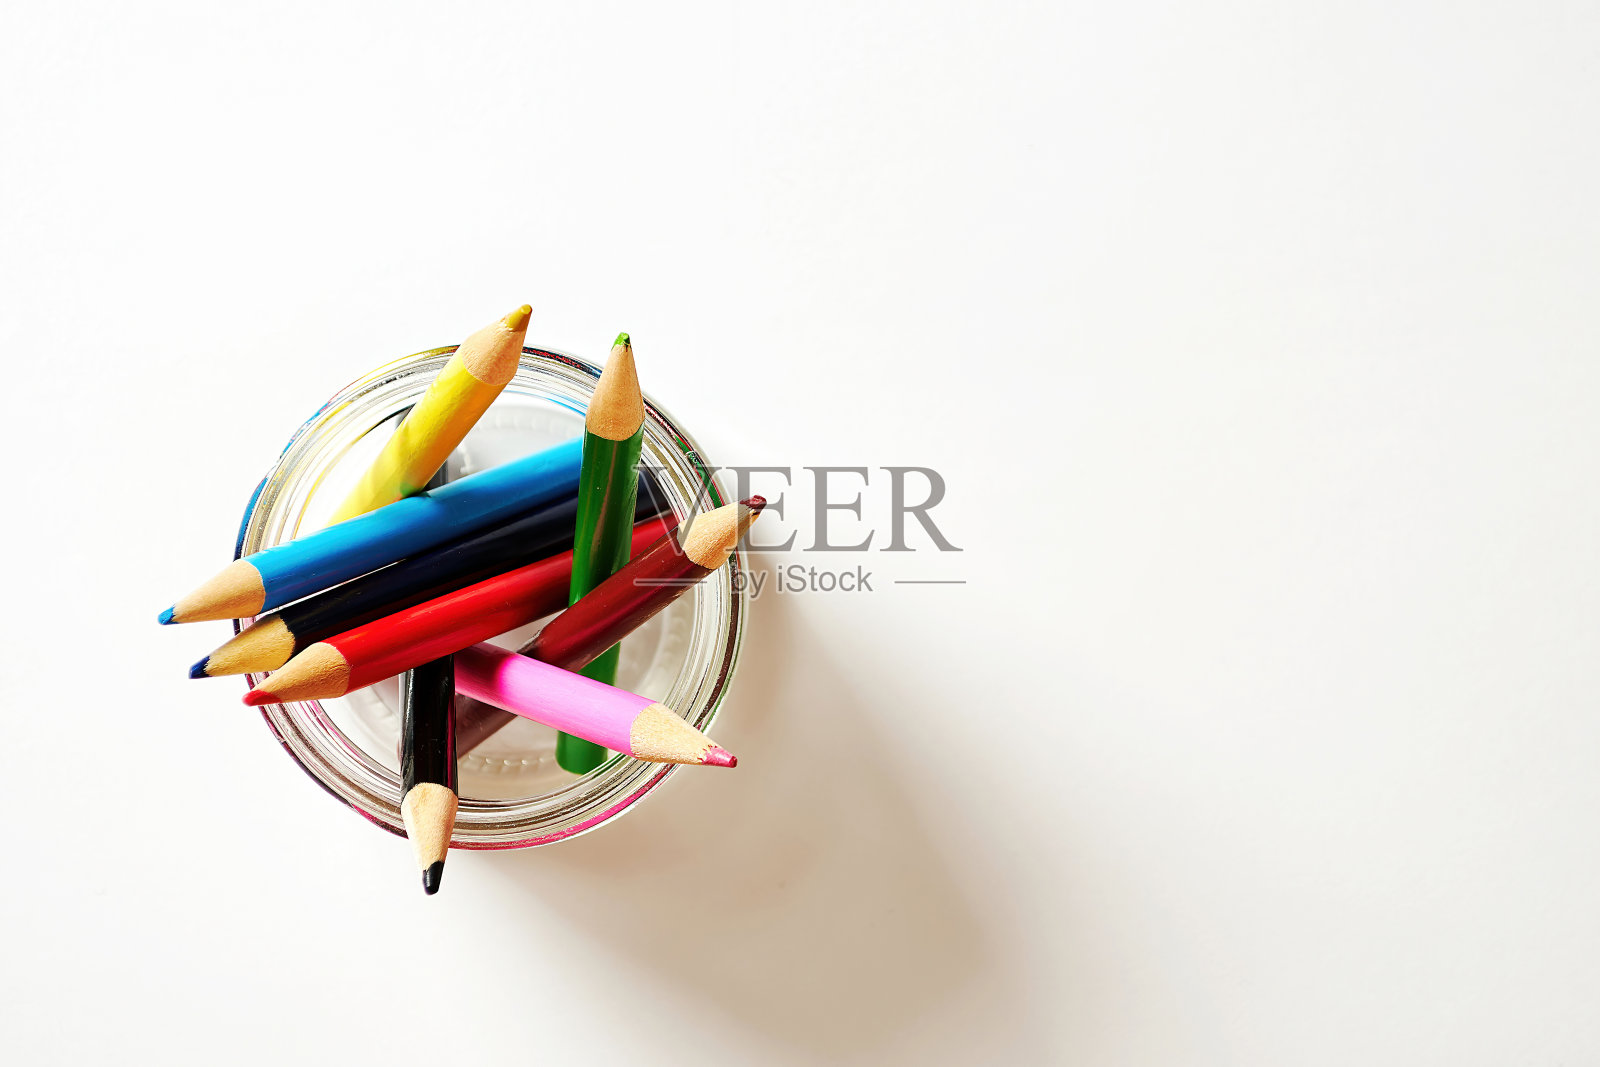 彩虹铅笔在一个罐子与白纸背景。复制文本的空格。照片摄影图片